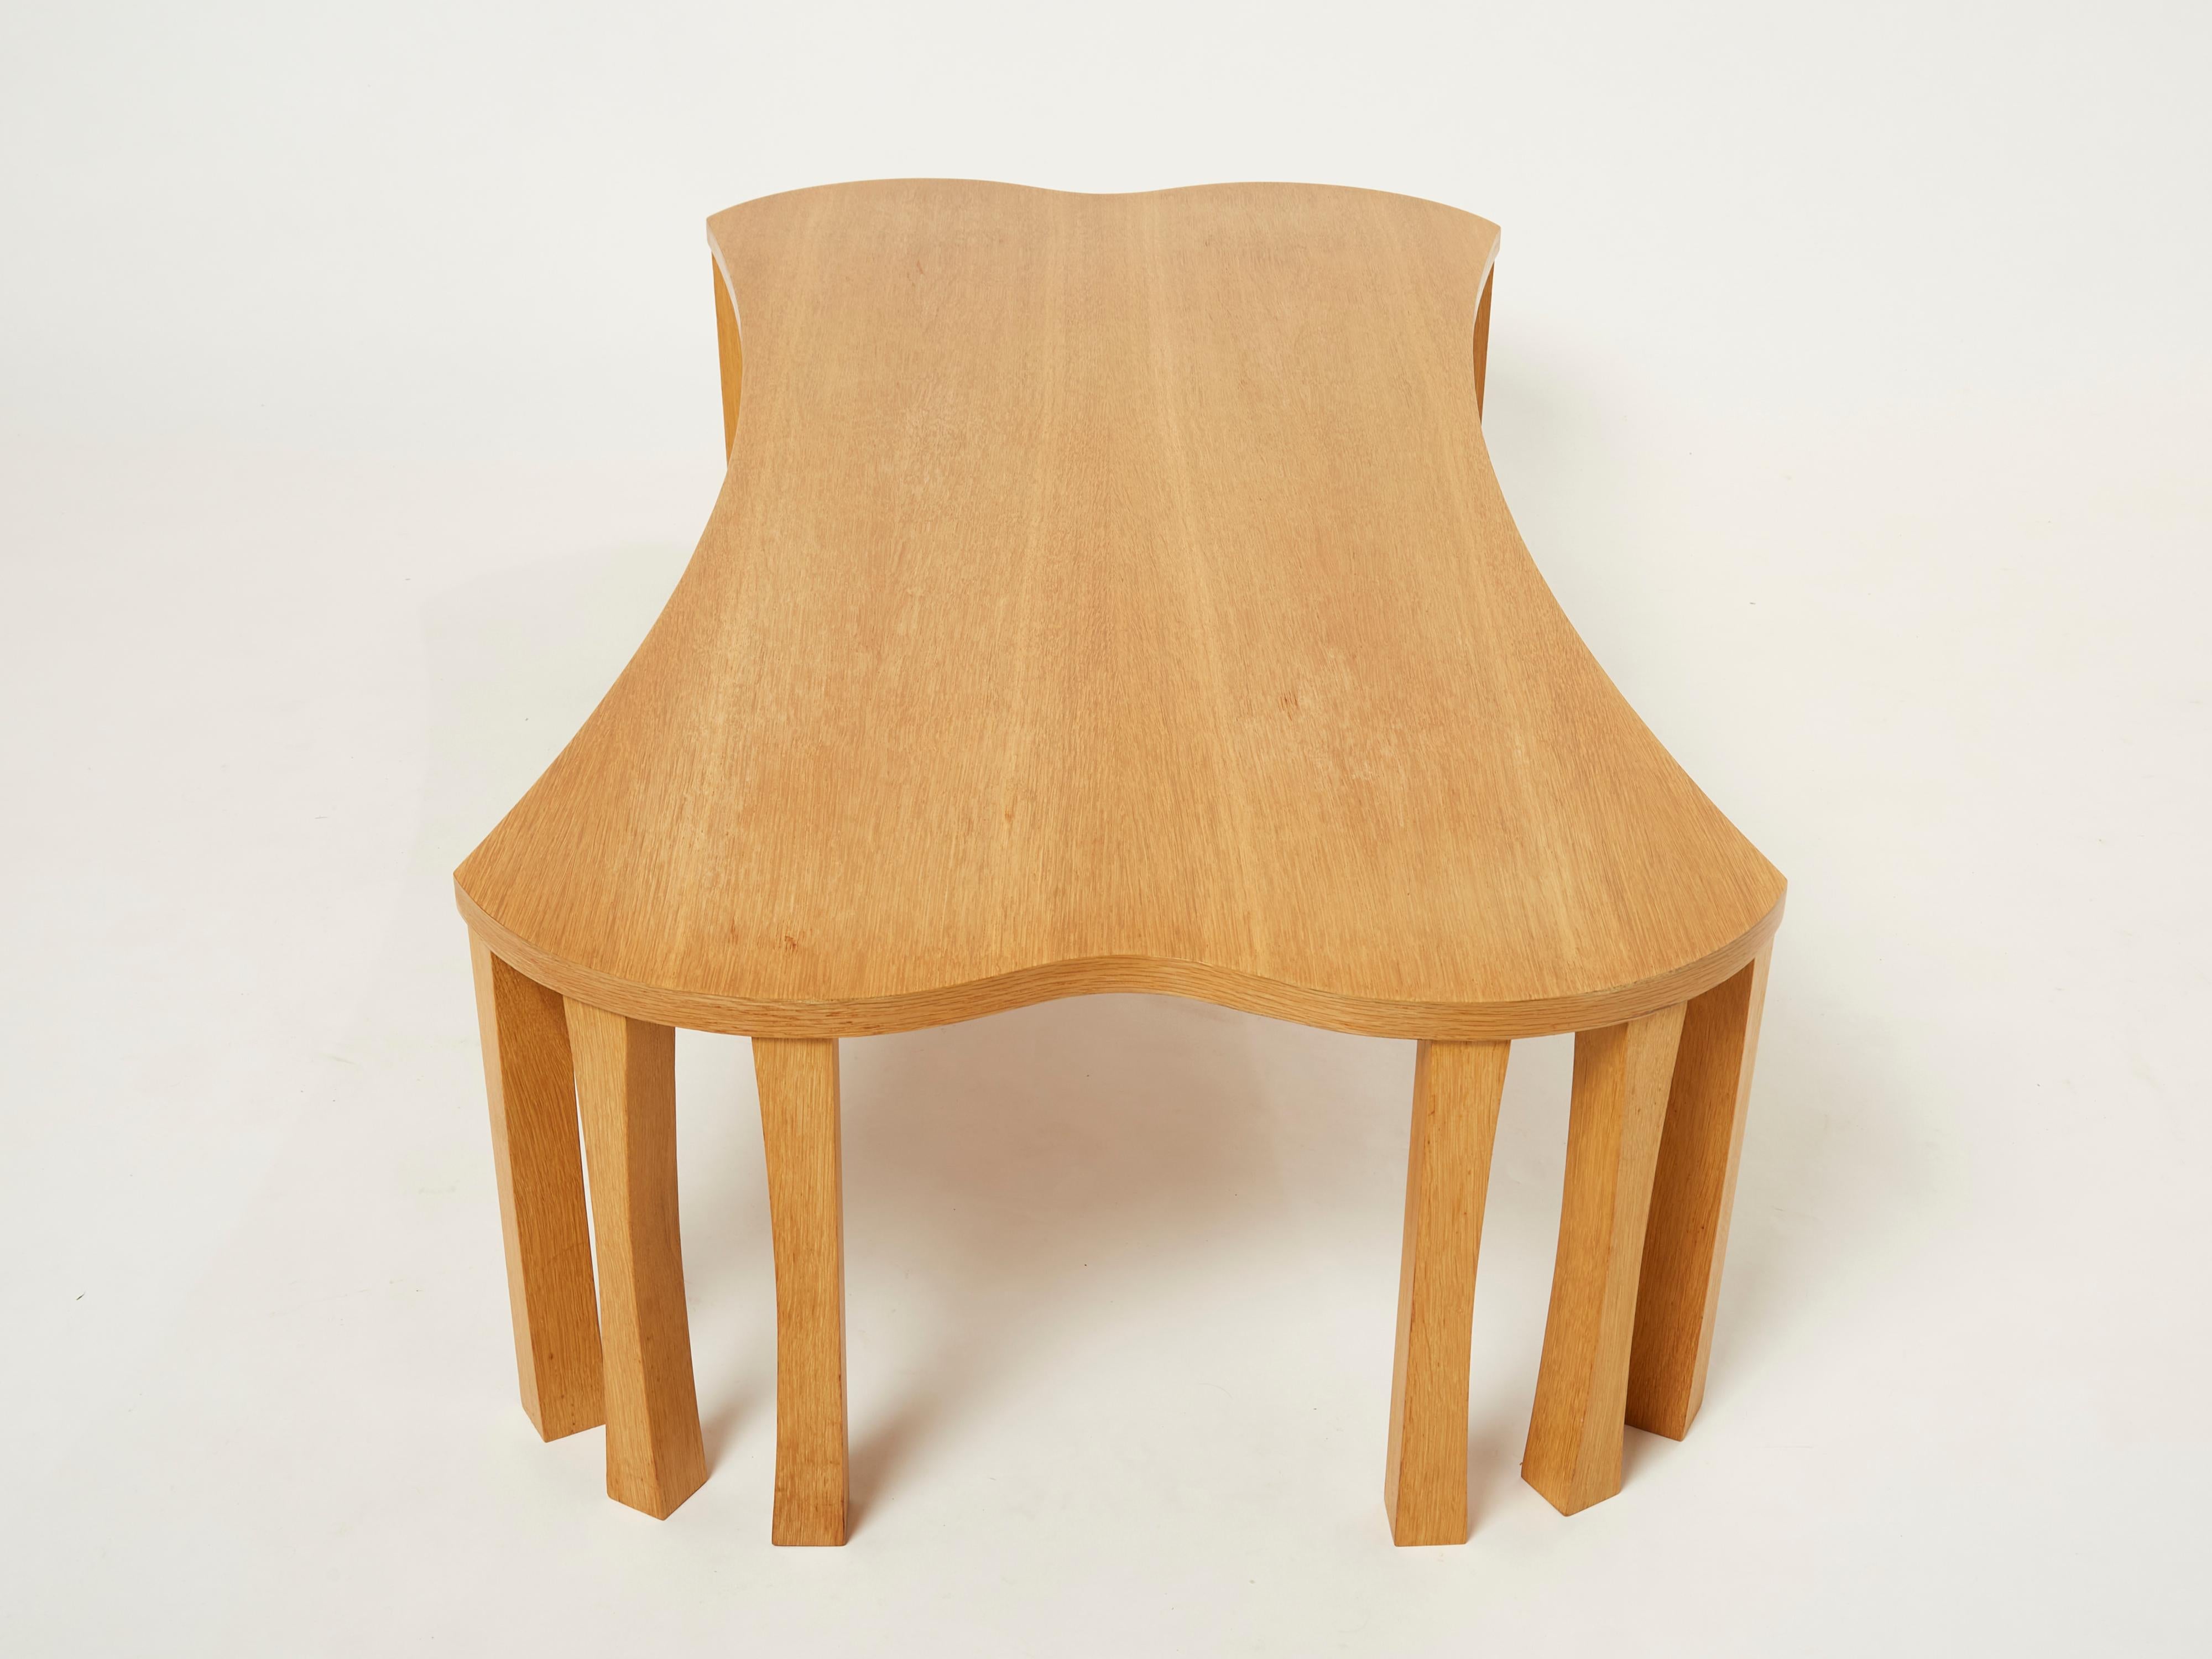 French Unique Vincent Poujardieu Free Form Oak Wood Coffee Table 1992 For Sale